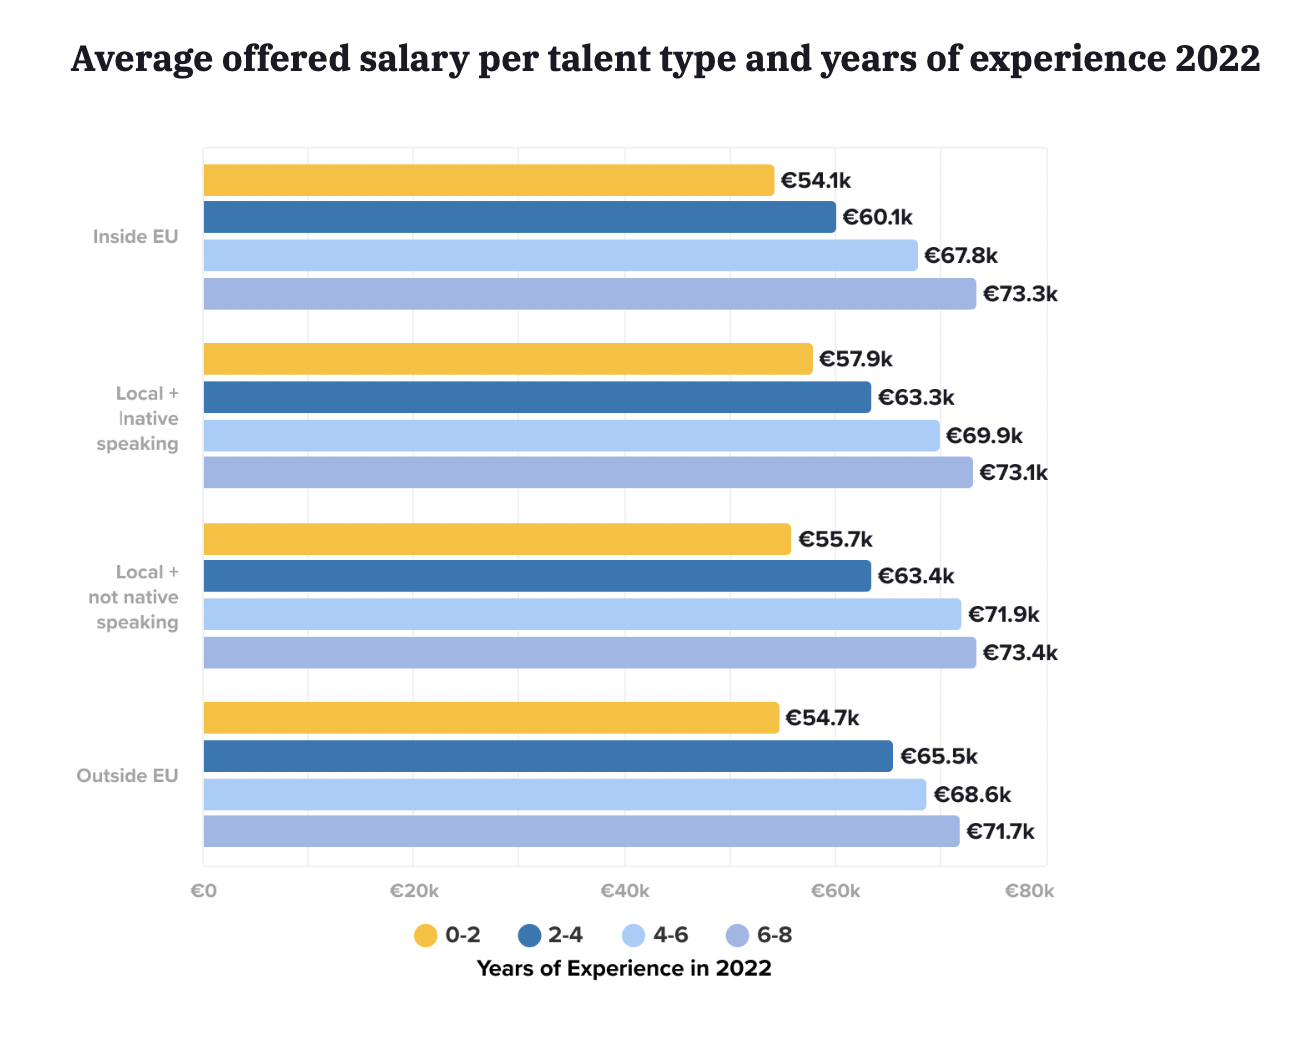 Salaire moyen offert par type de talent et années d'expérience en Allemagne en 2022 